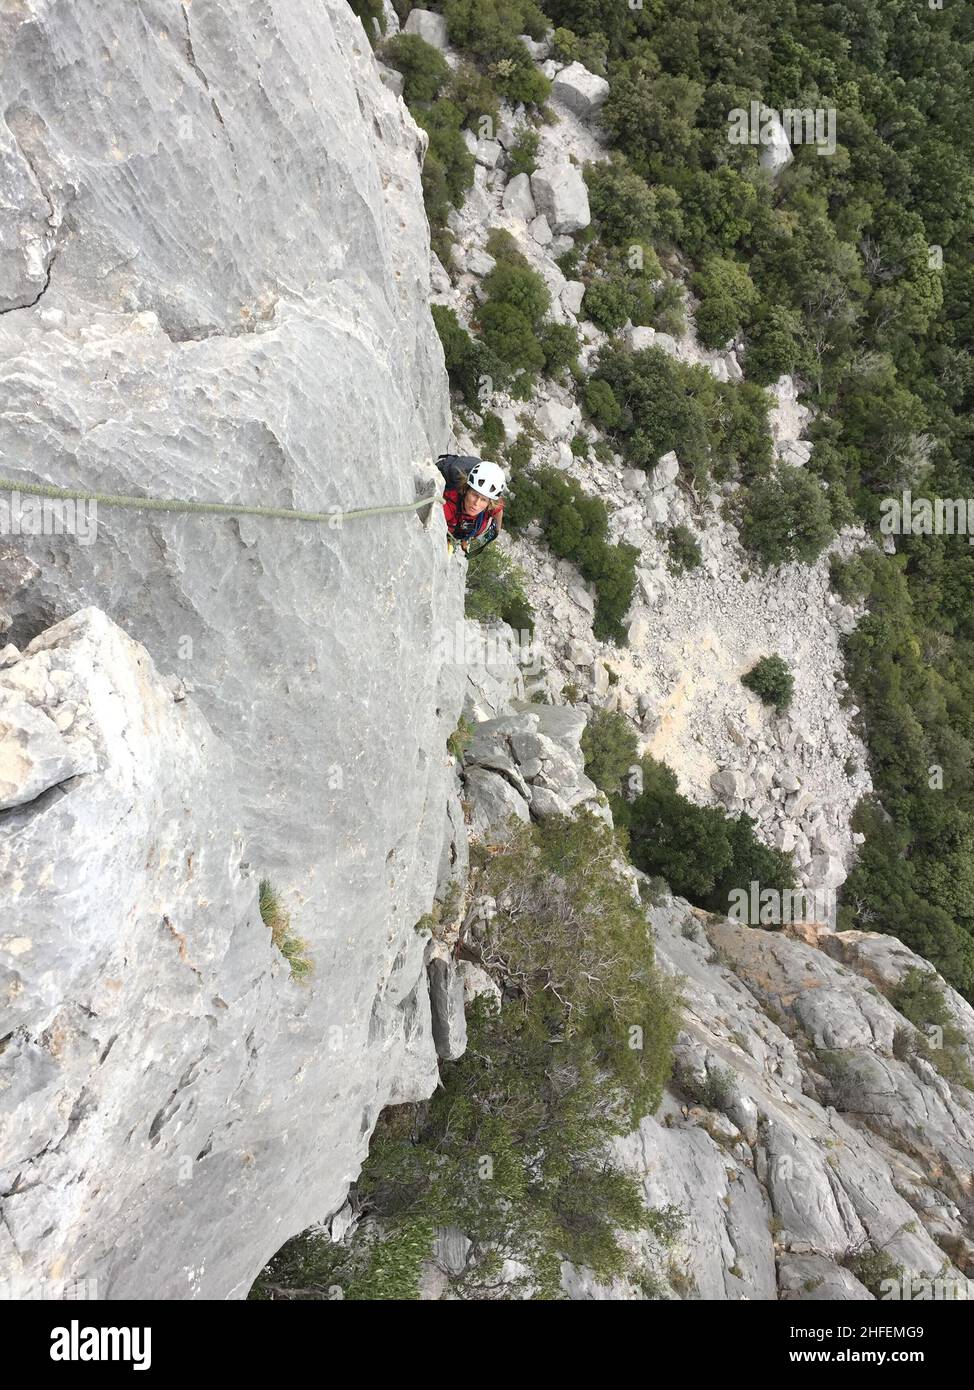 Klettern im wilden Hinterland Sardiniens Stock Photo